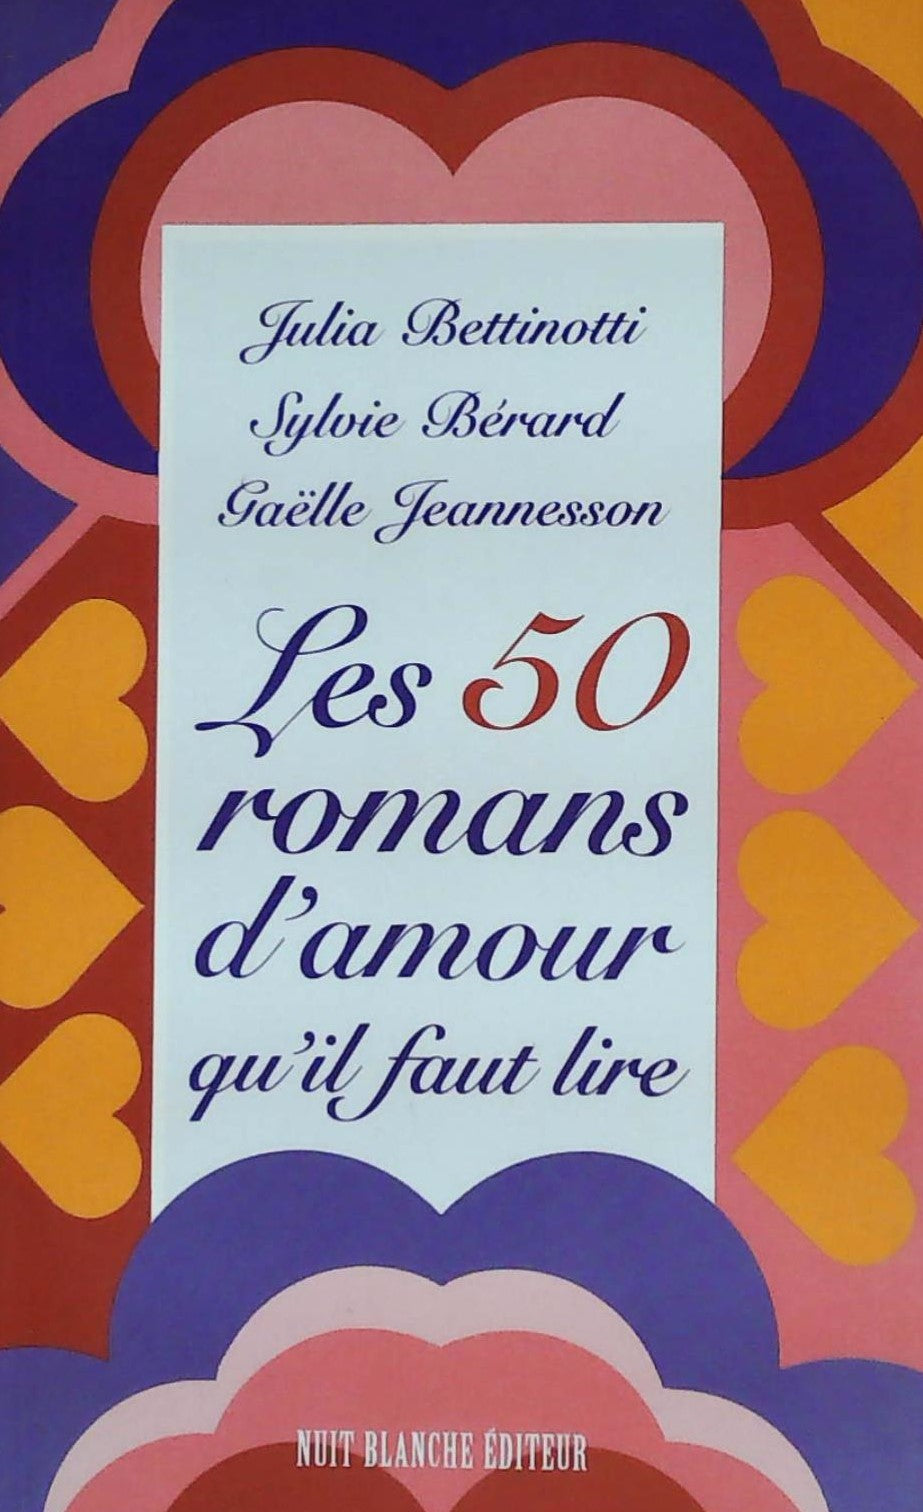 Livre ISBN 2921053462 Les 50 romans d'amour qu'il faut lire (Julia Bettinotti)